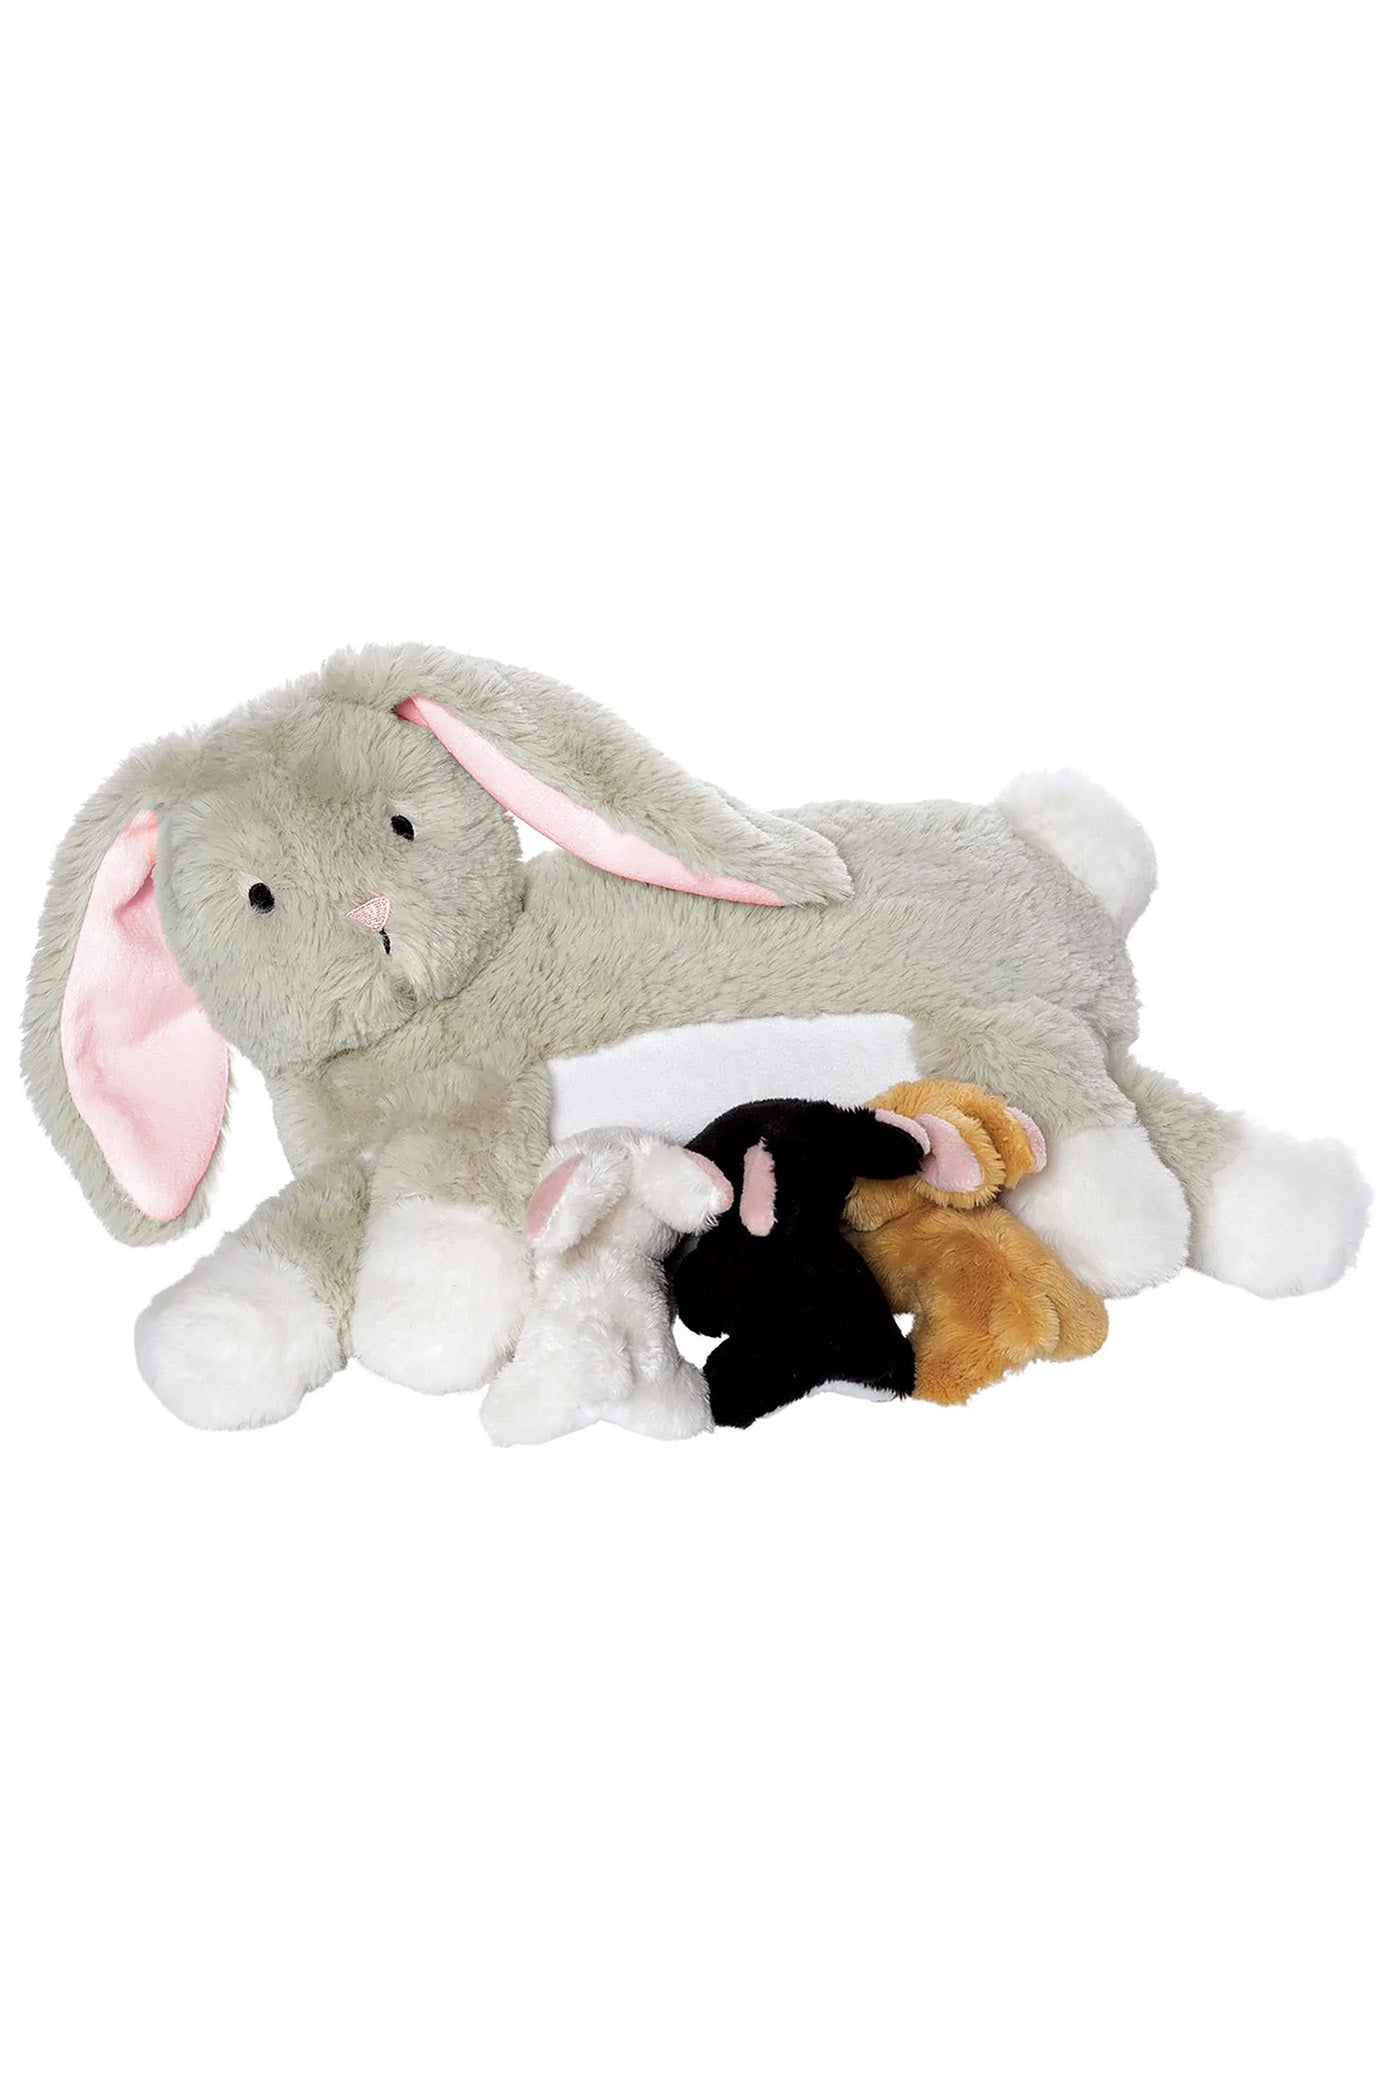 Nursing Nola Rabbit Stuffed Animal